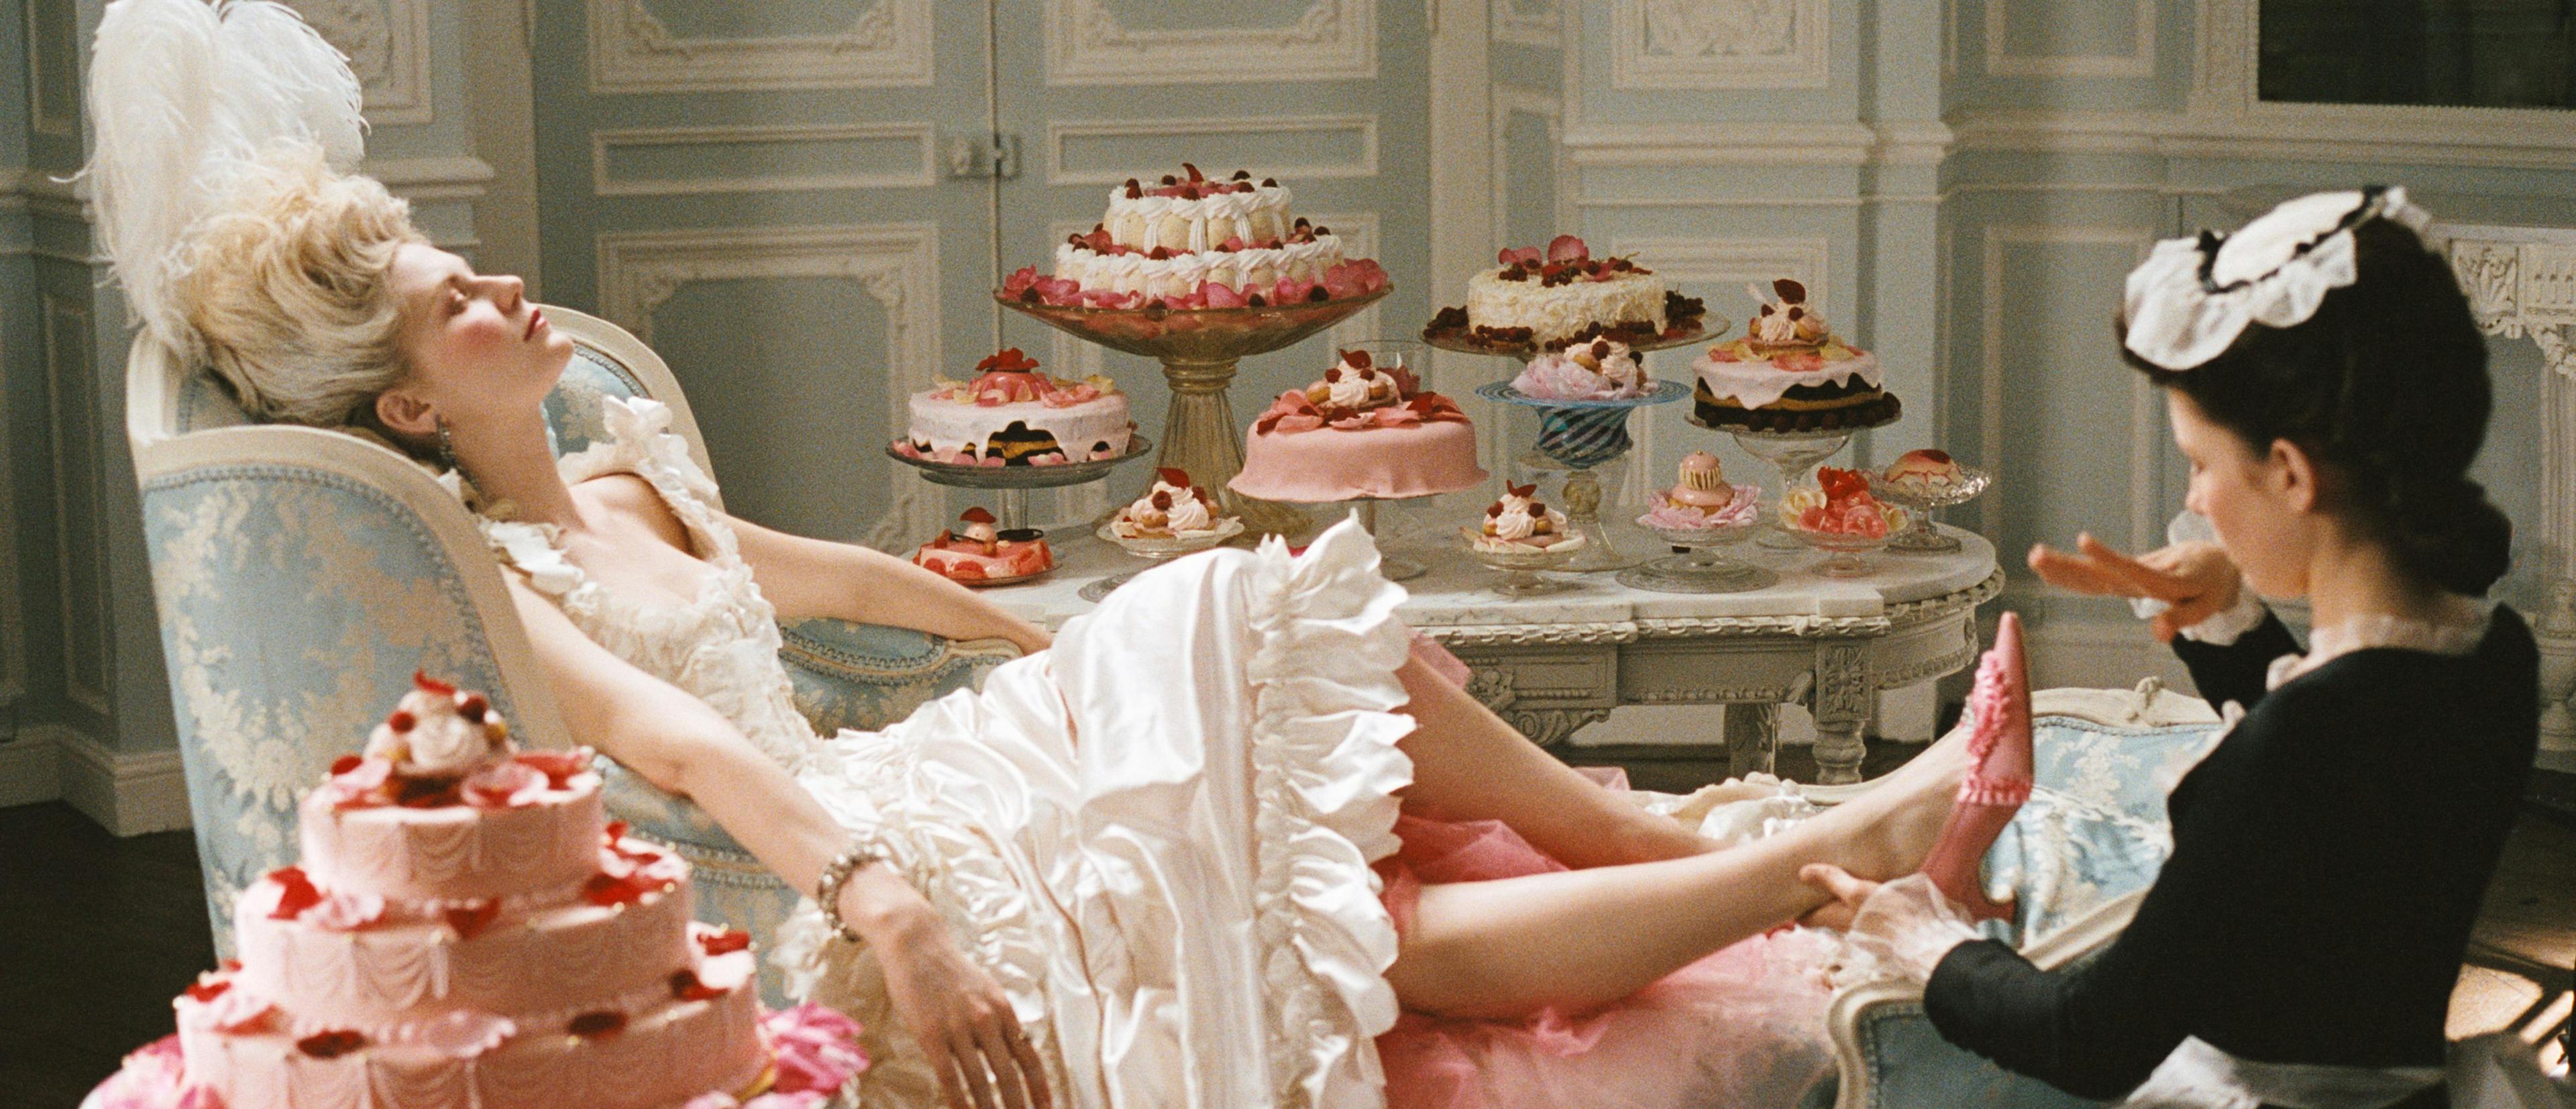 La actriz Kirsten Dunst, en una imagen promocional de la película 'Maria Antonieta', de Sofia Coppola